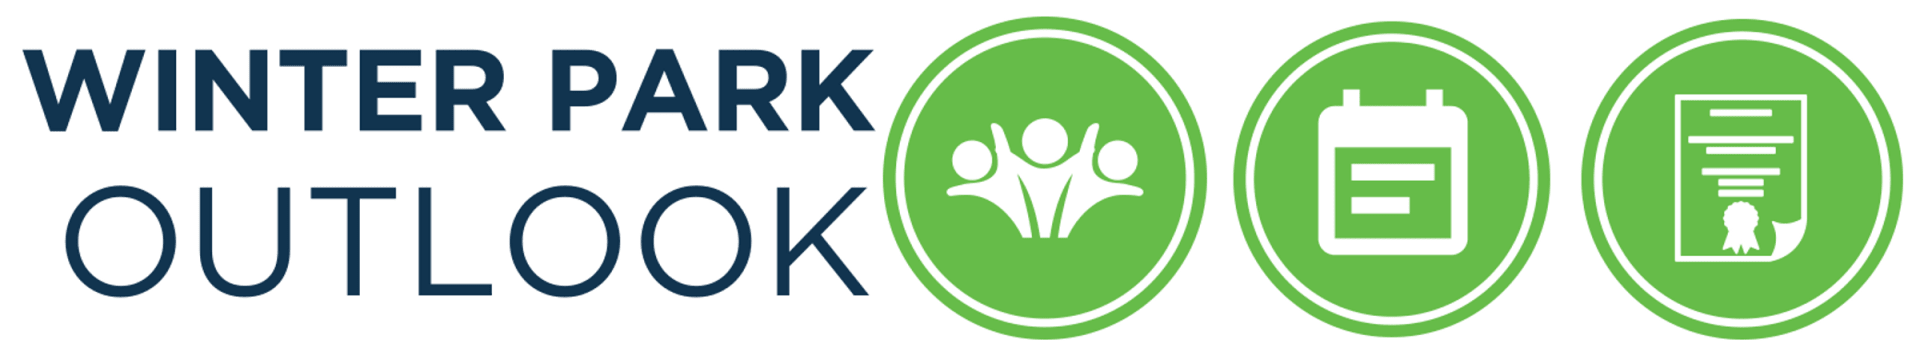 Green Outlook Logo - Winter Park Outlook - Winter Park Chamber of Commerce, FL